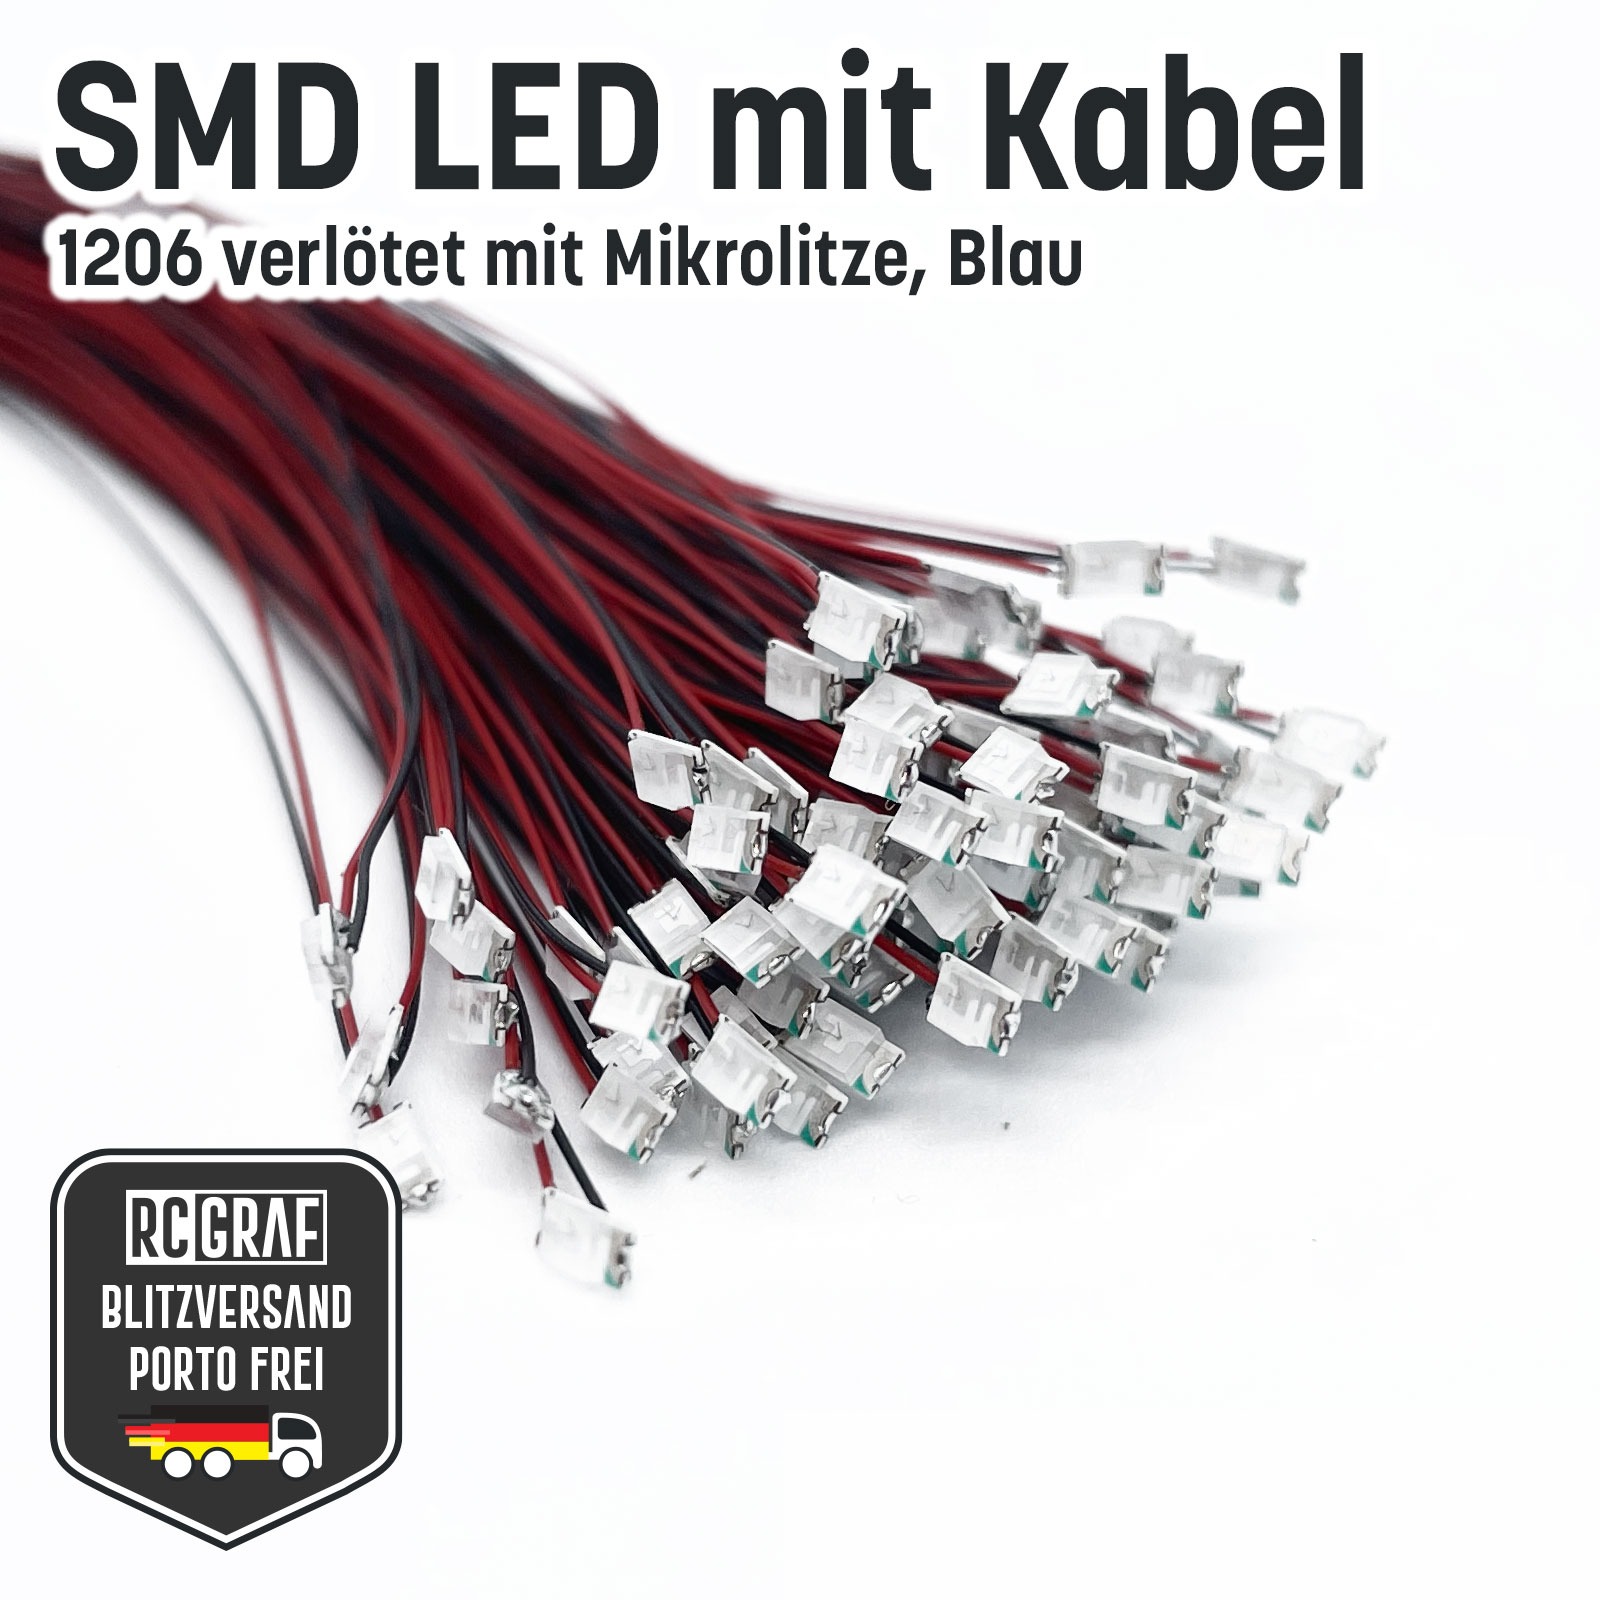 SMD LED 1206 Microlitze 30cm verlötet 3